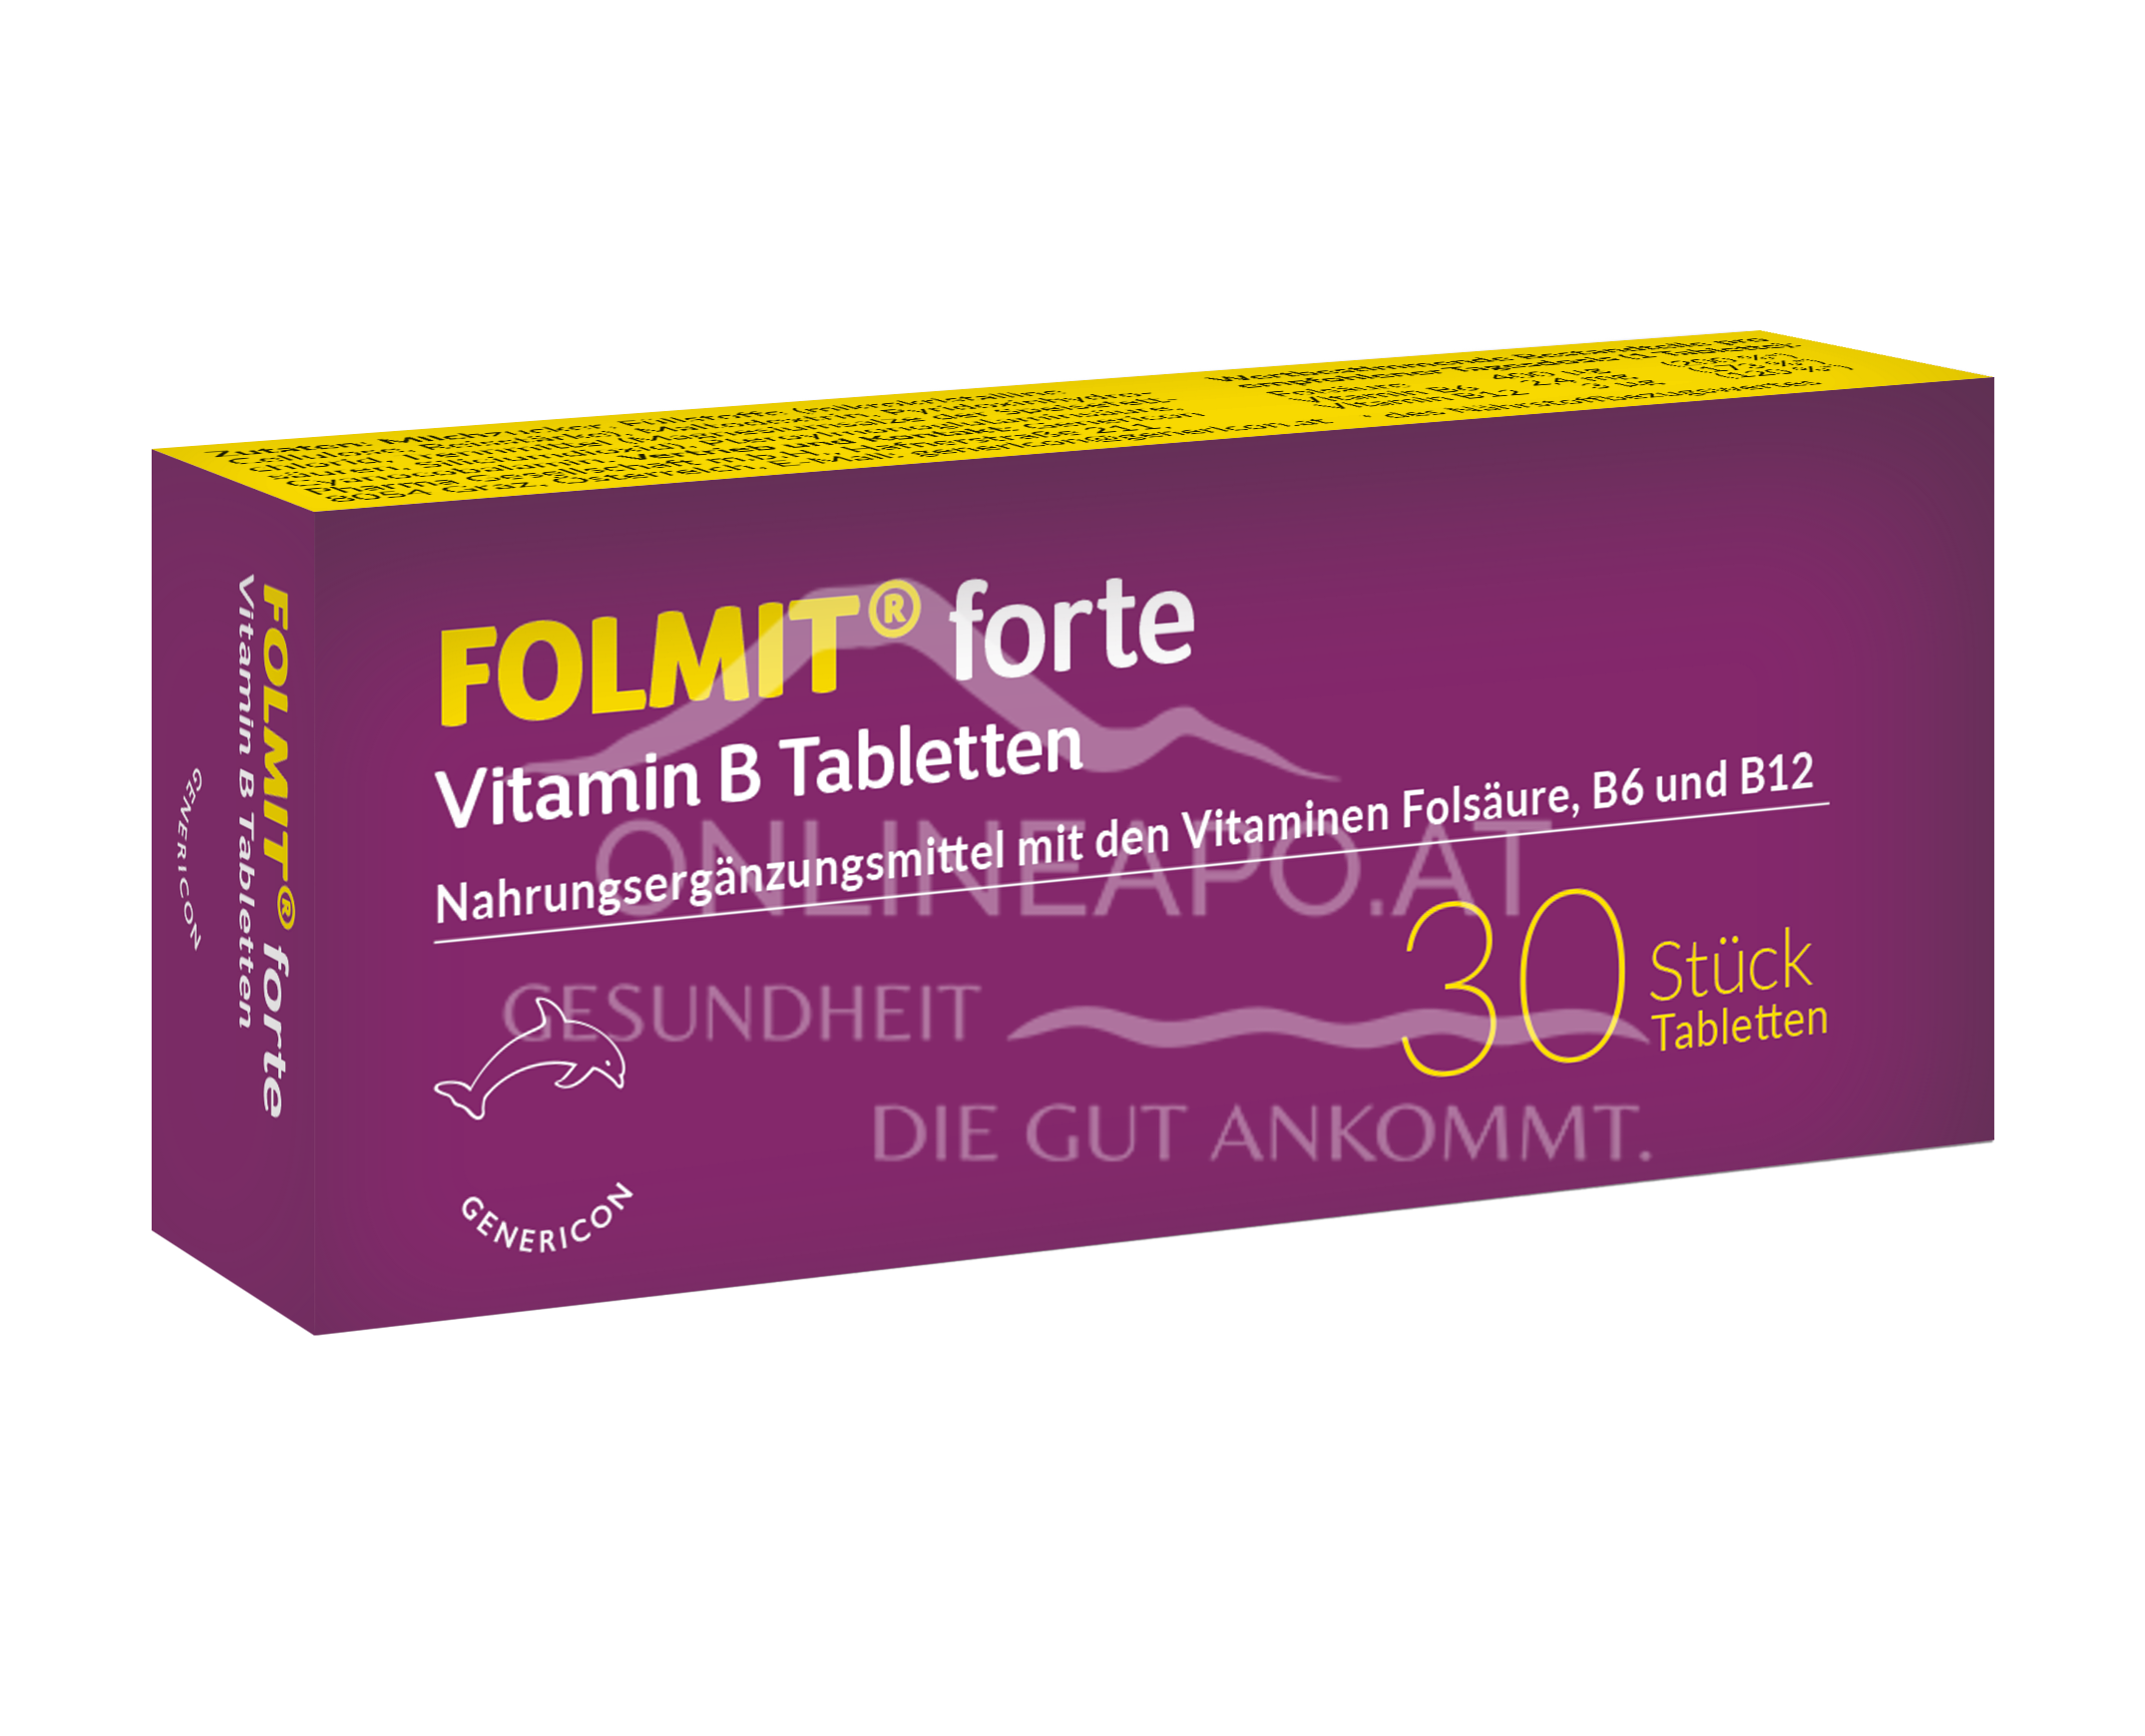 FOLMIT® forte Vitamin B Tabletten